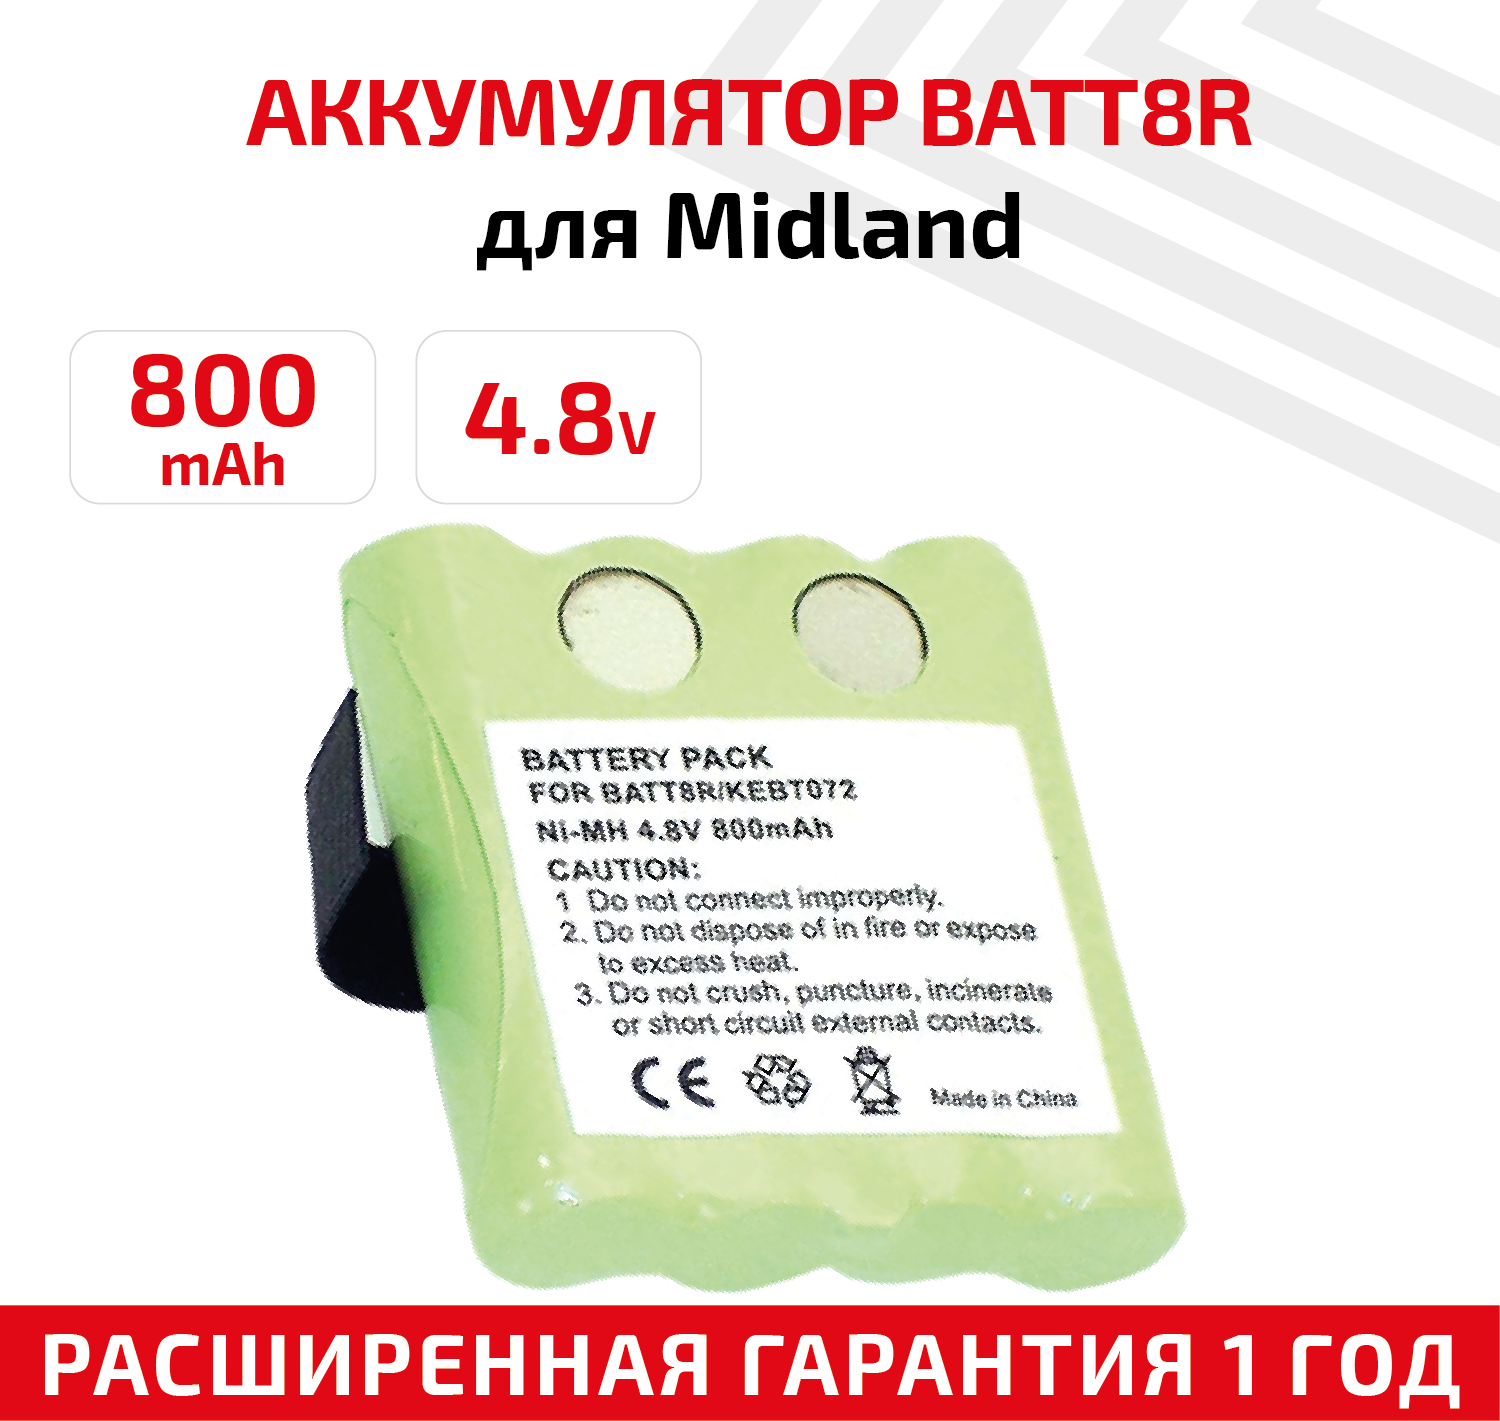 Аккумуляторная батарея (АКБ) BATT8R для рации (радиостанции) Midland LXT300 M370H1A SX700R TalkAbout FV700R SX700 SX700R 800мАч 4.8В Ni-Mh